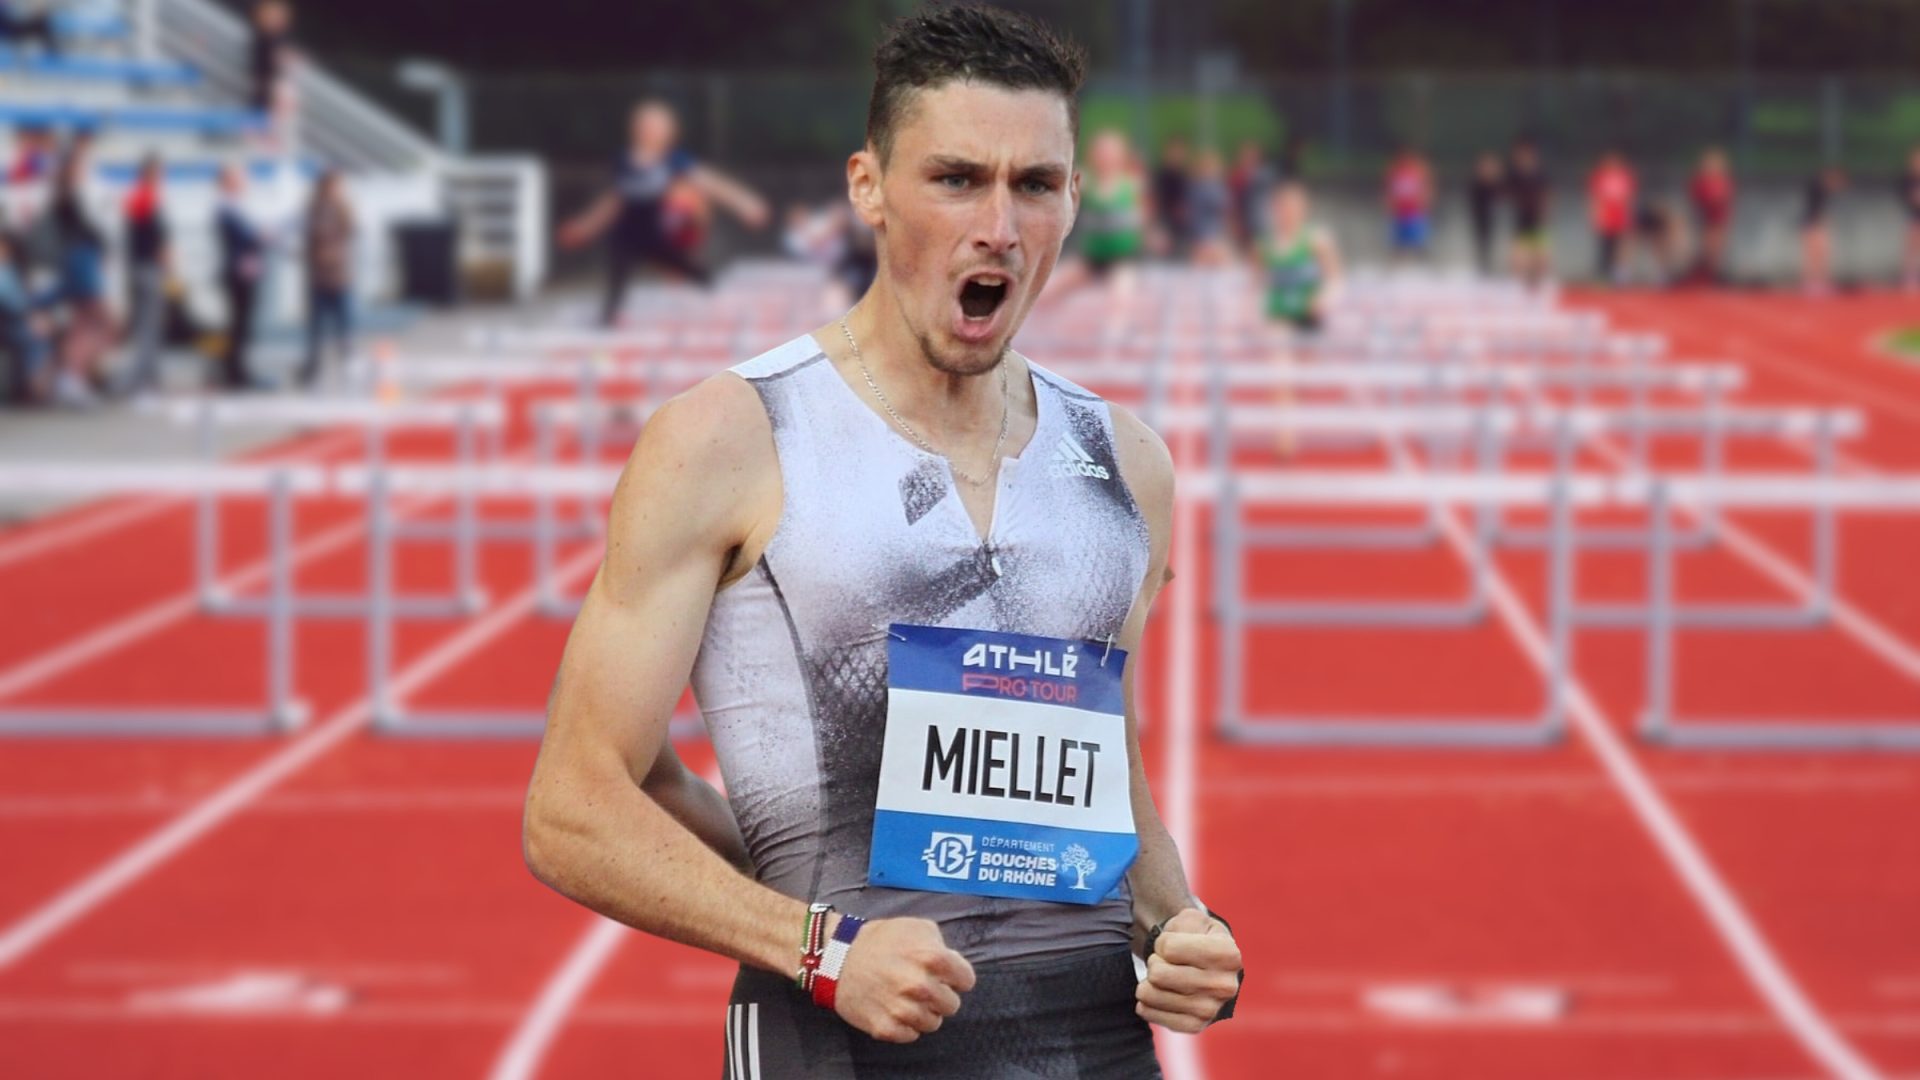 Alexis Miellet champion d'Europe du 3000m steeple à Rome